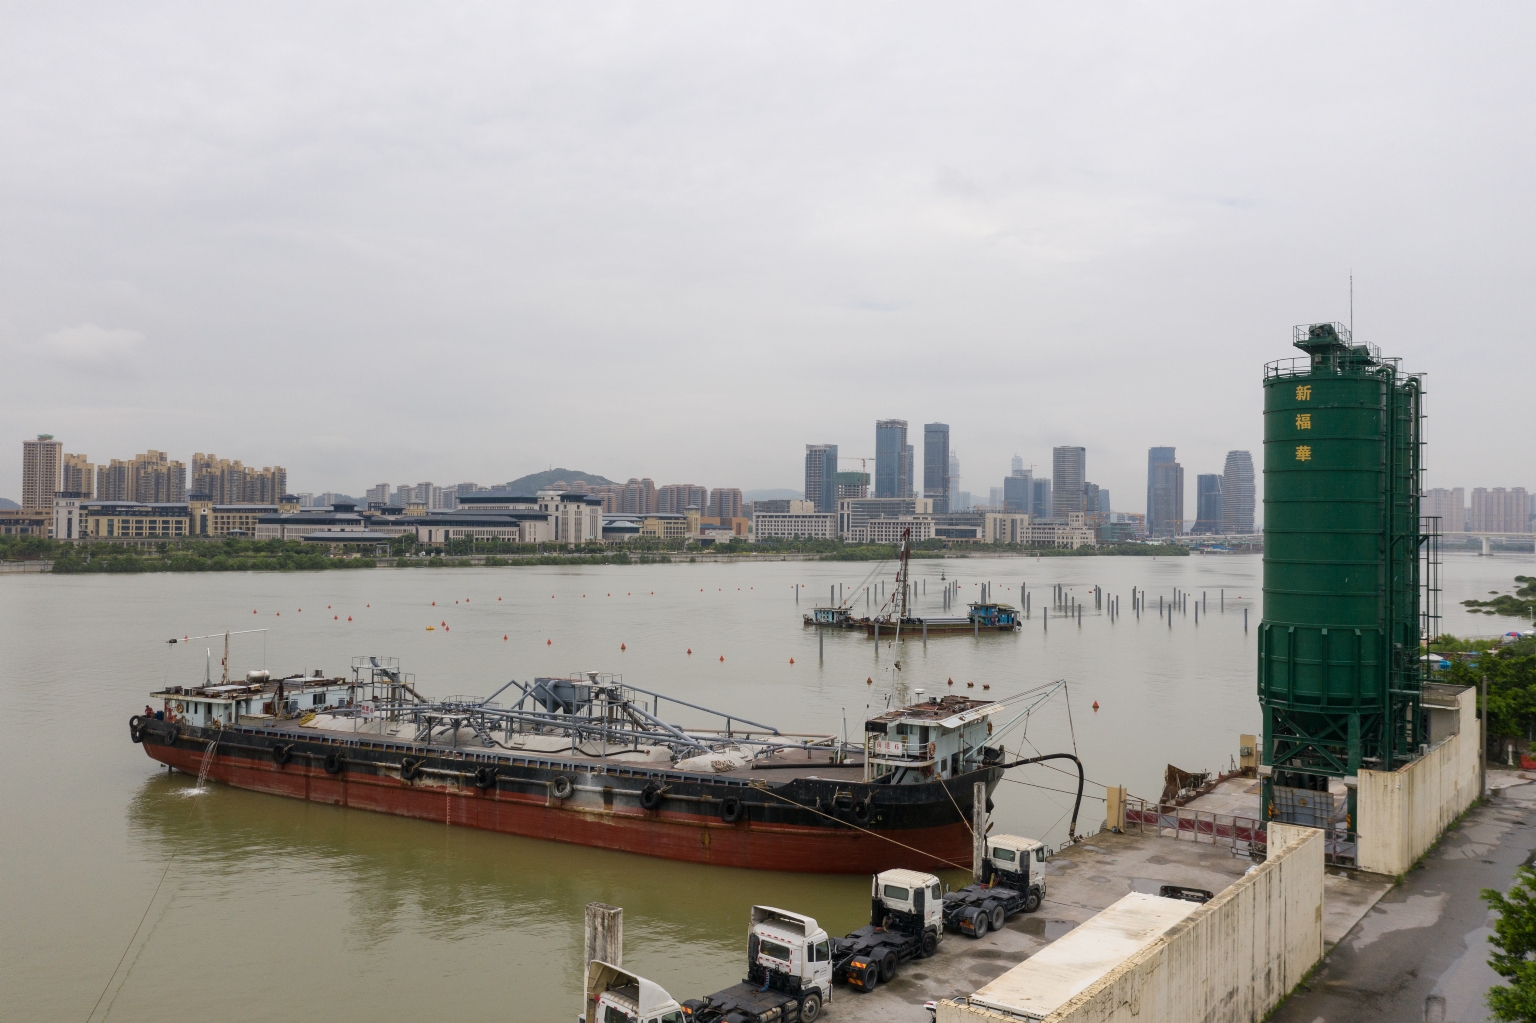 橫琴河聯生工業區水泥裝卸碼頭